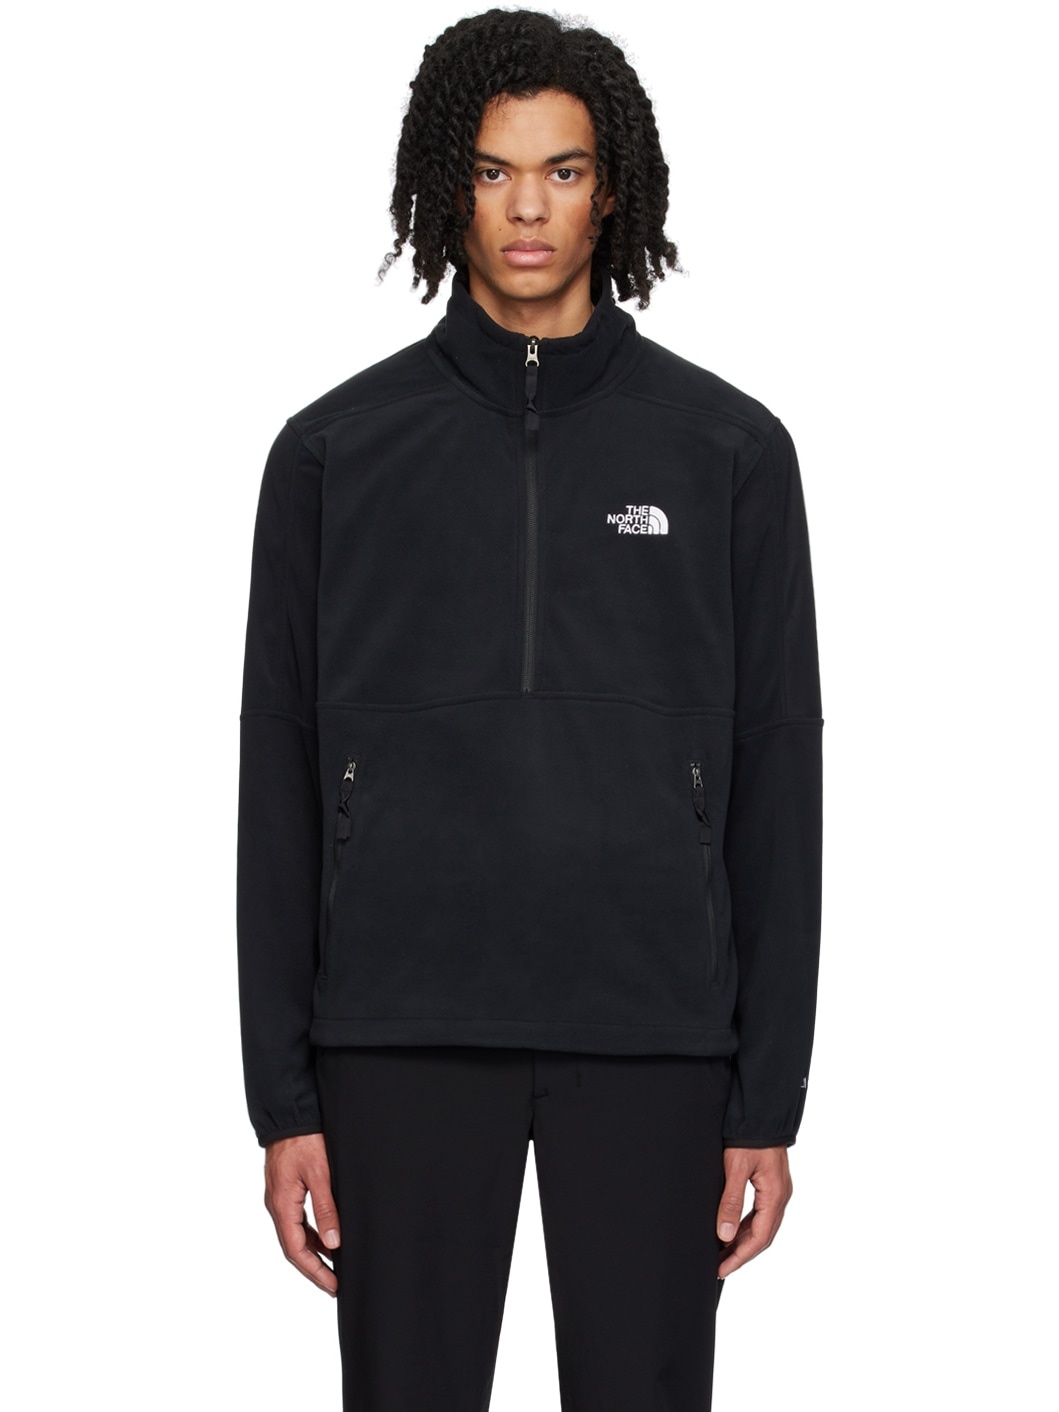 Black Half-Zip Sweater - 1